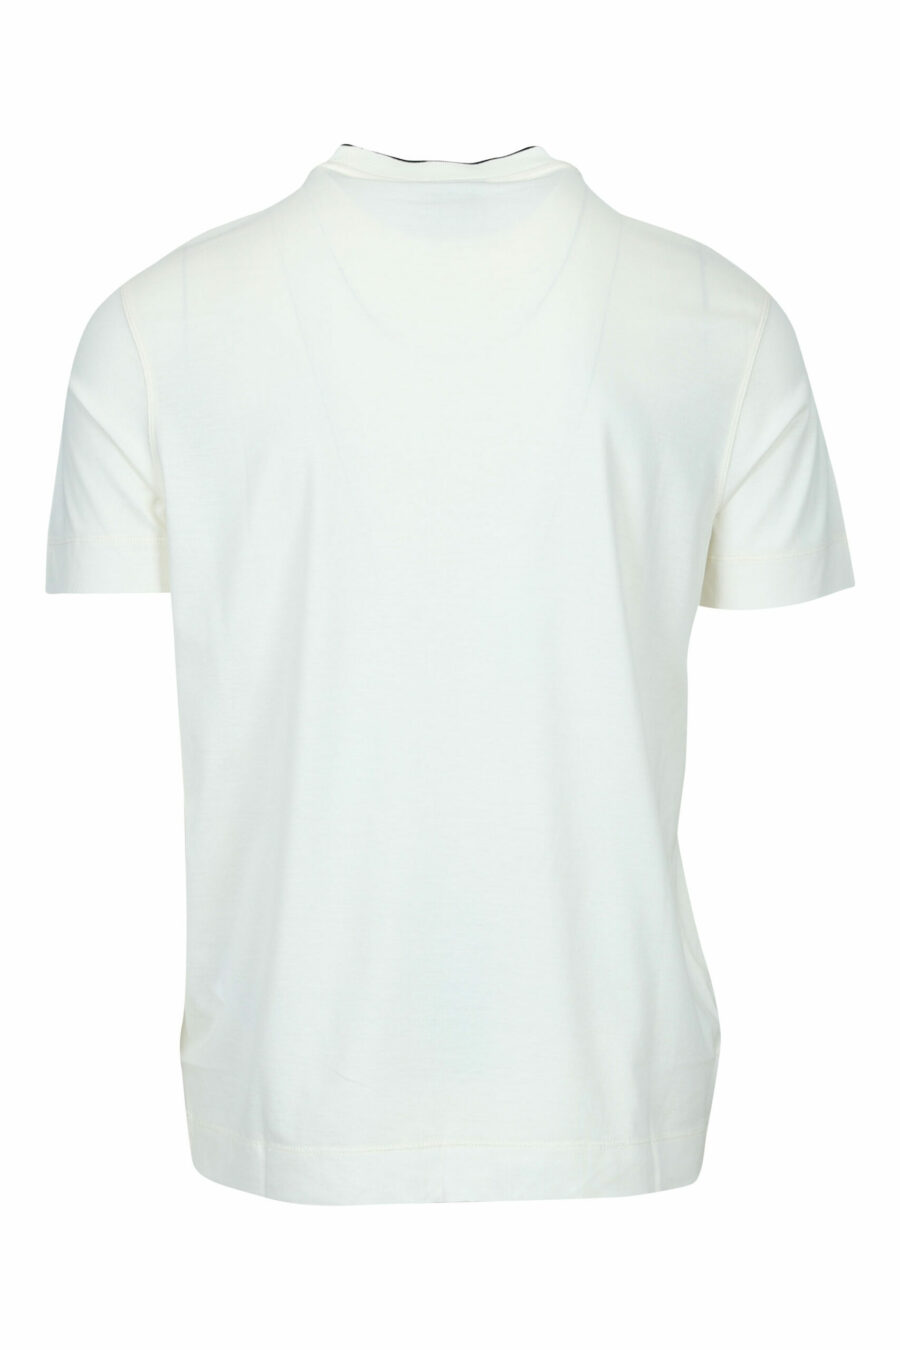 Cremefarbenes T-Shirt mit zentriertem Adler-Logo - 8058947986996 1 skaliert